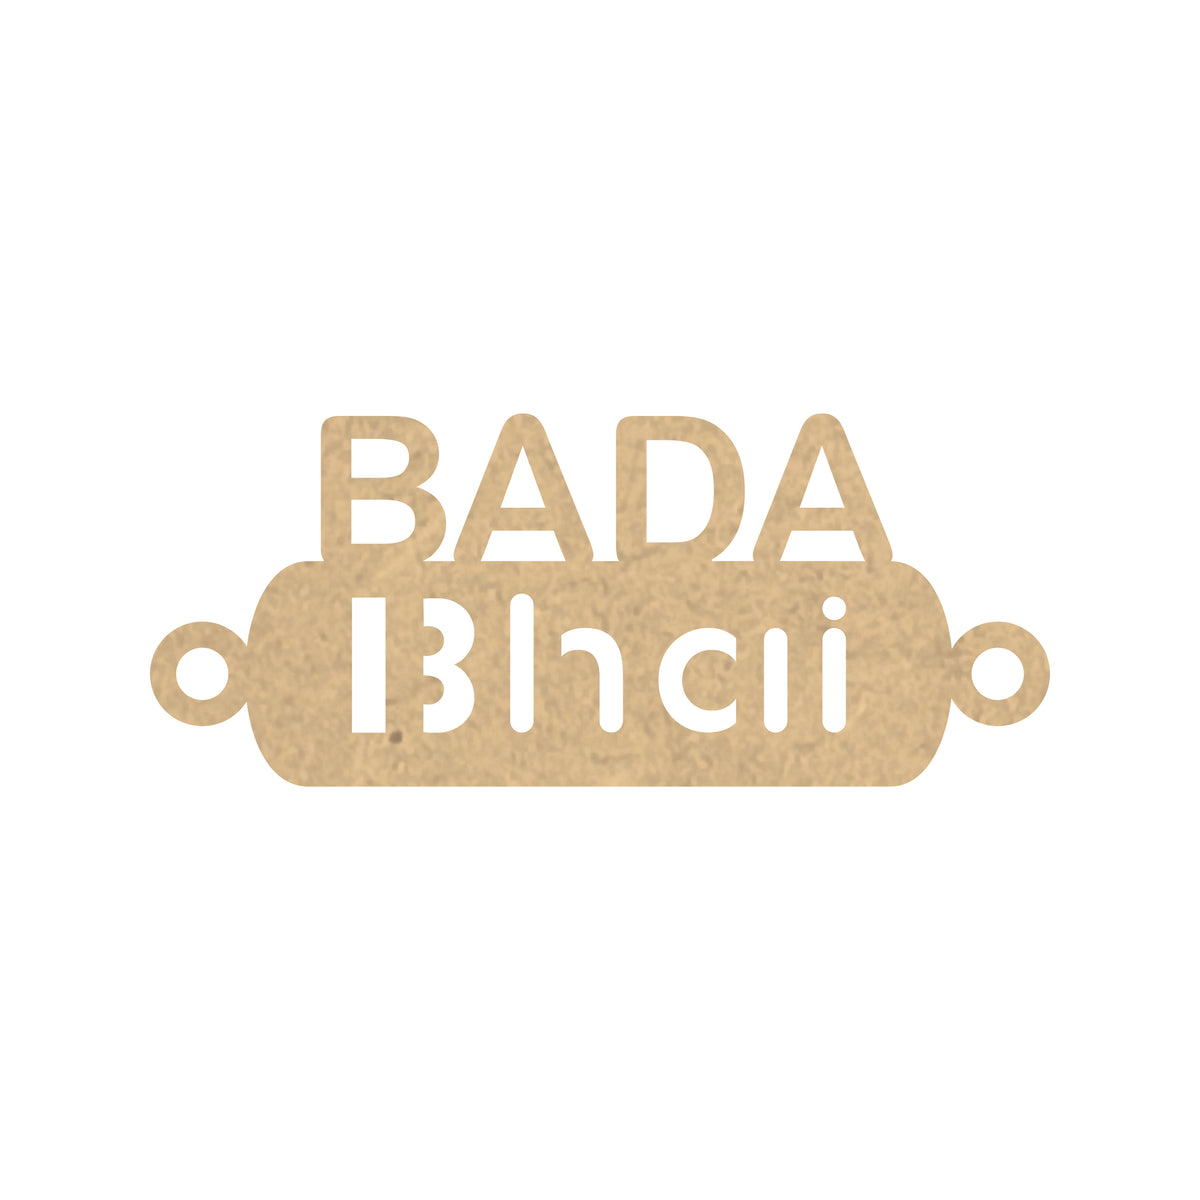 Rakhi Bases - Bada Bhai